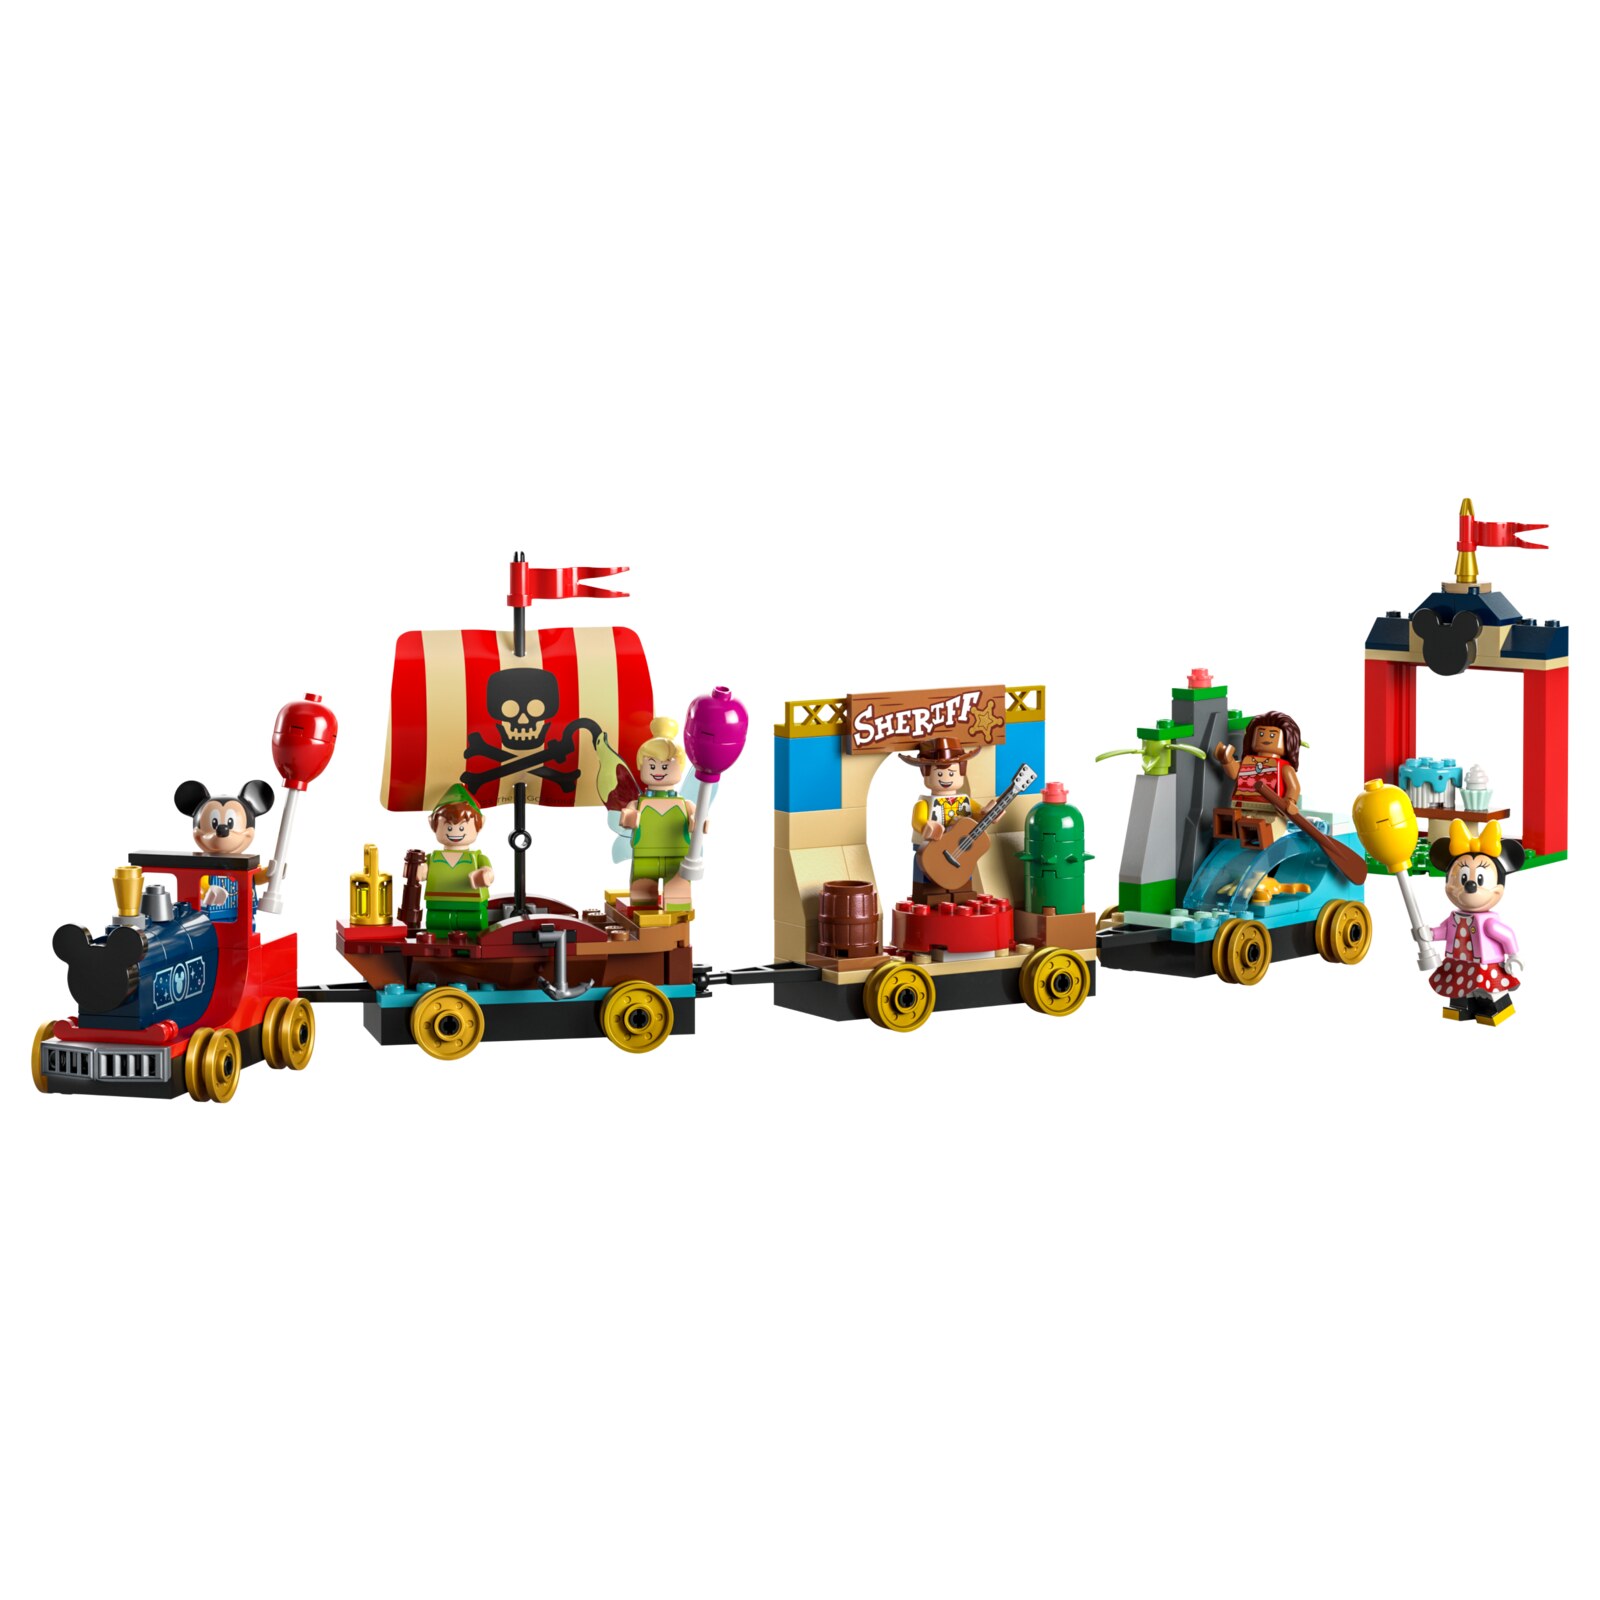 Конструктор LEGO Disney Праздничный поезд Диснея, 200 деталей, 43212 конструктор пластиковый wange поезд 59 деталей